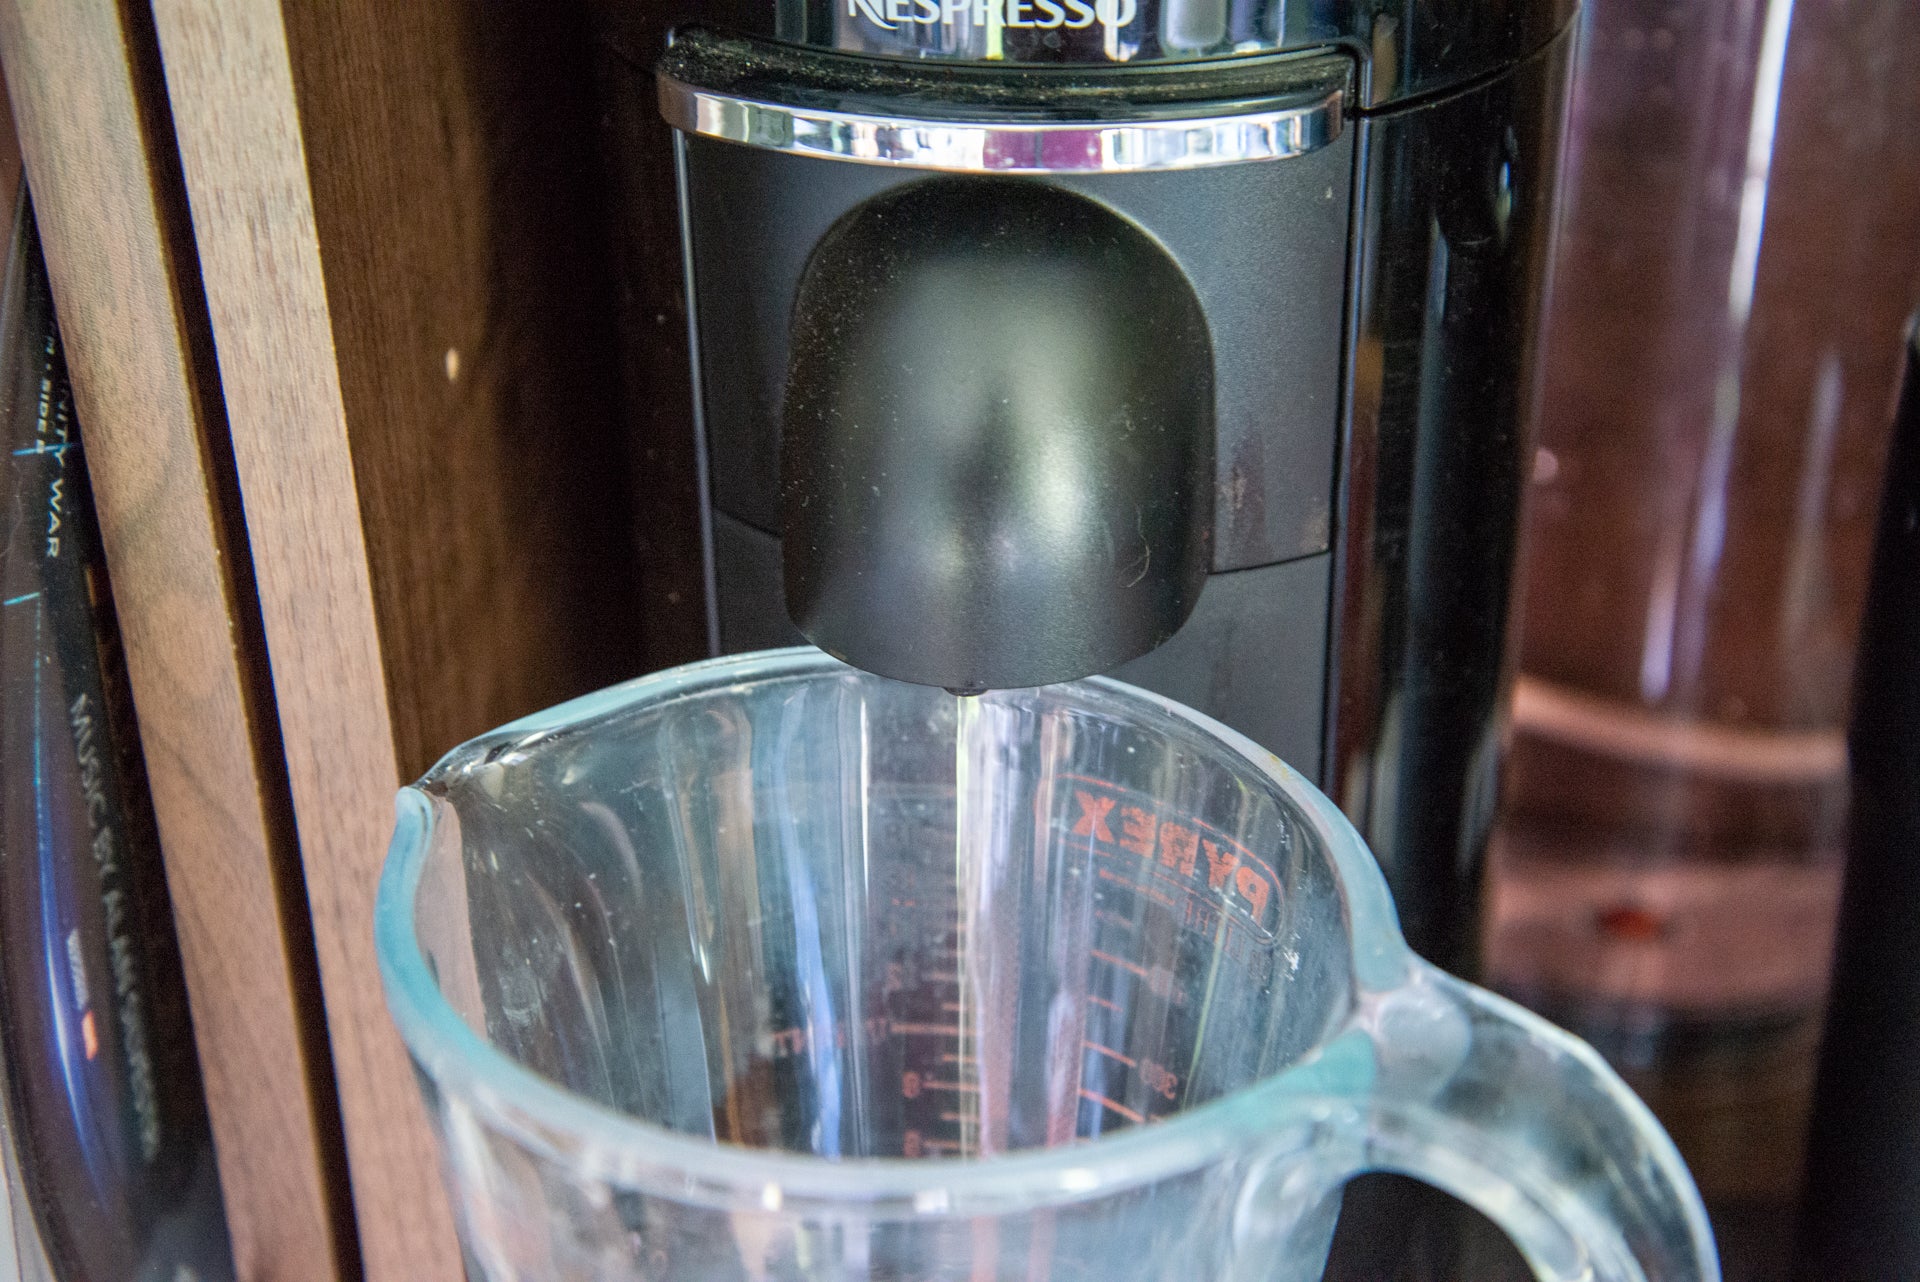 Torpe jaula presión How to descale a Nespresso machine | Trusted Reviews